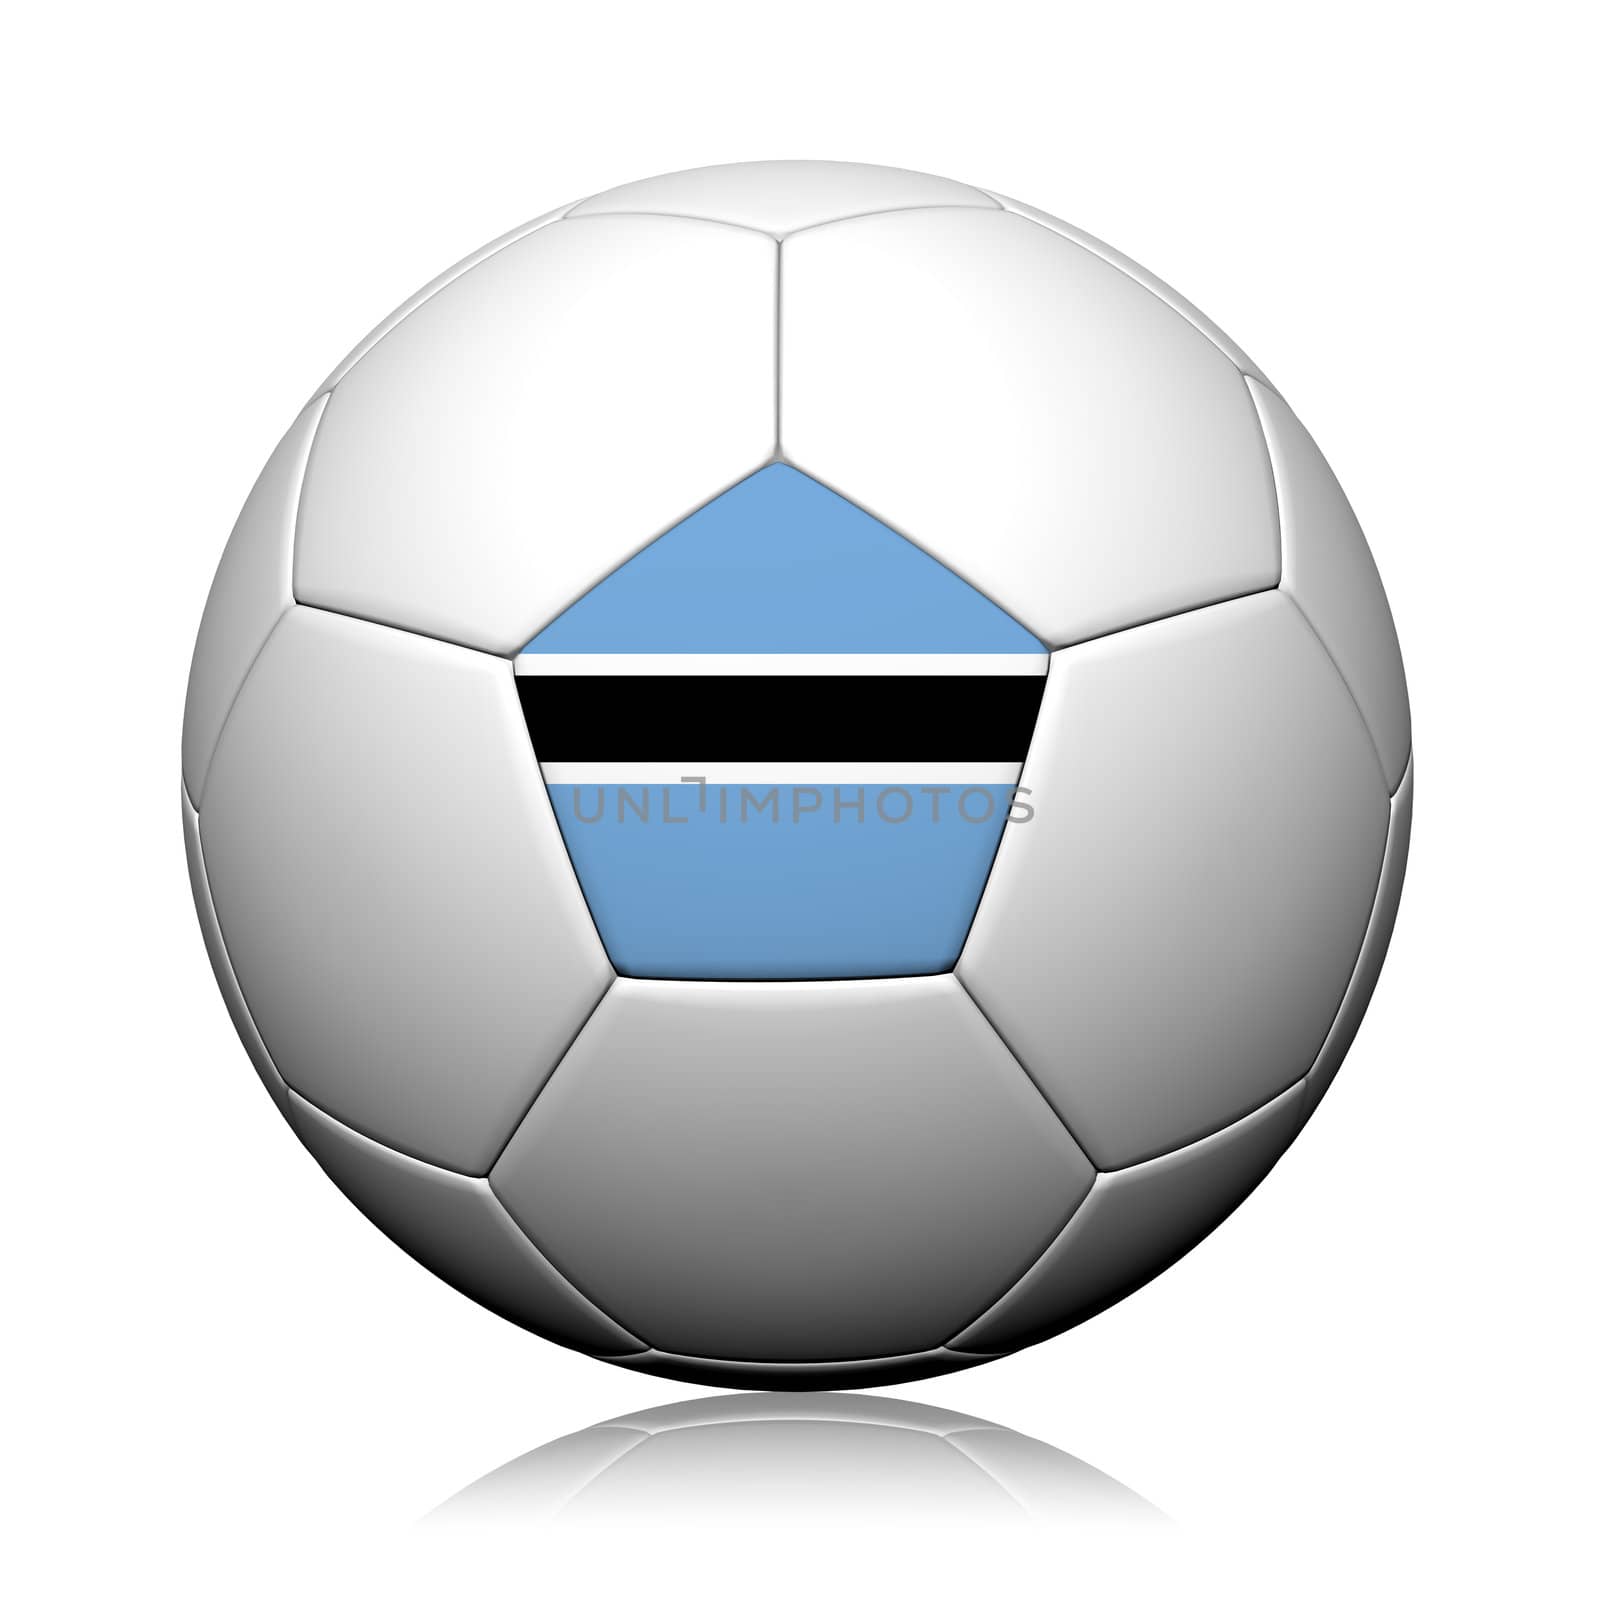 Botswana Flag Pattern 3d rendering of a soccer ball